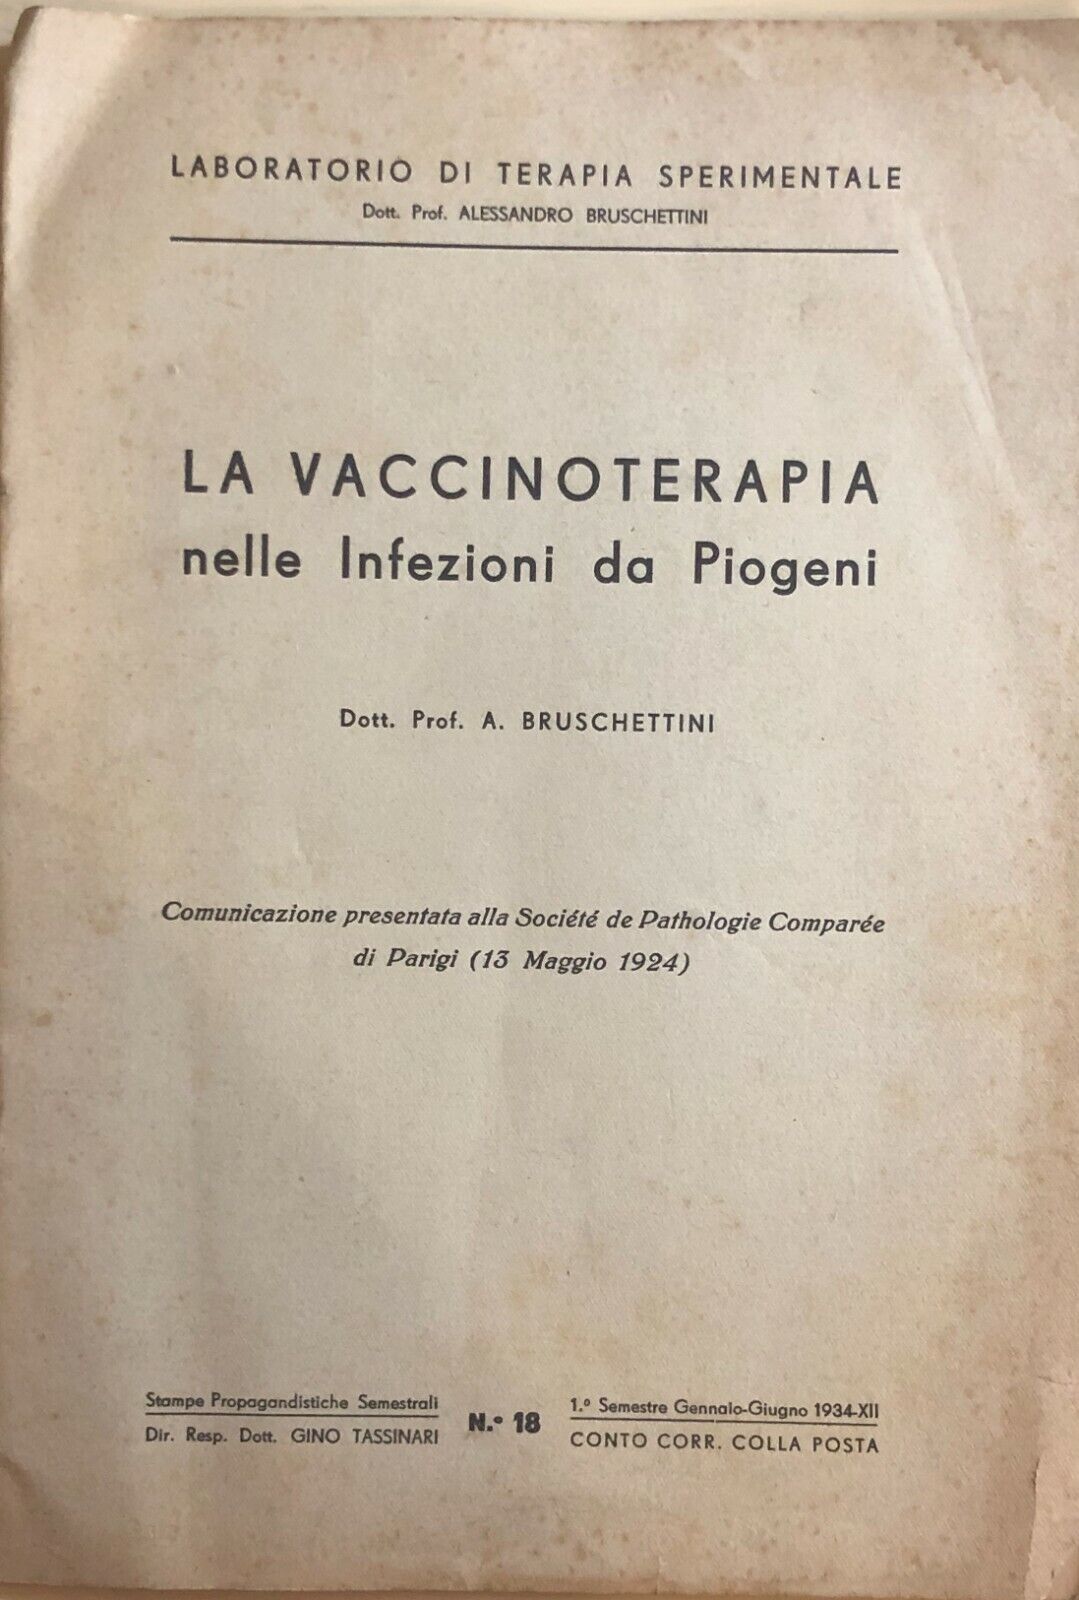 La vaccinoterapia nelle infezioni da piogeni di Dott. Prof. Alessandro Bruschett